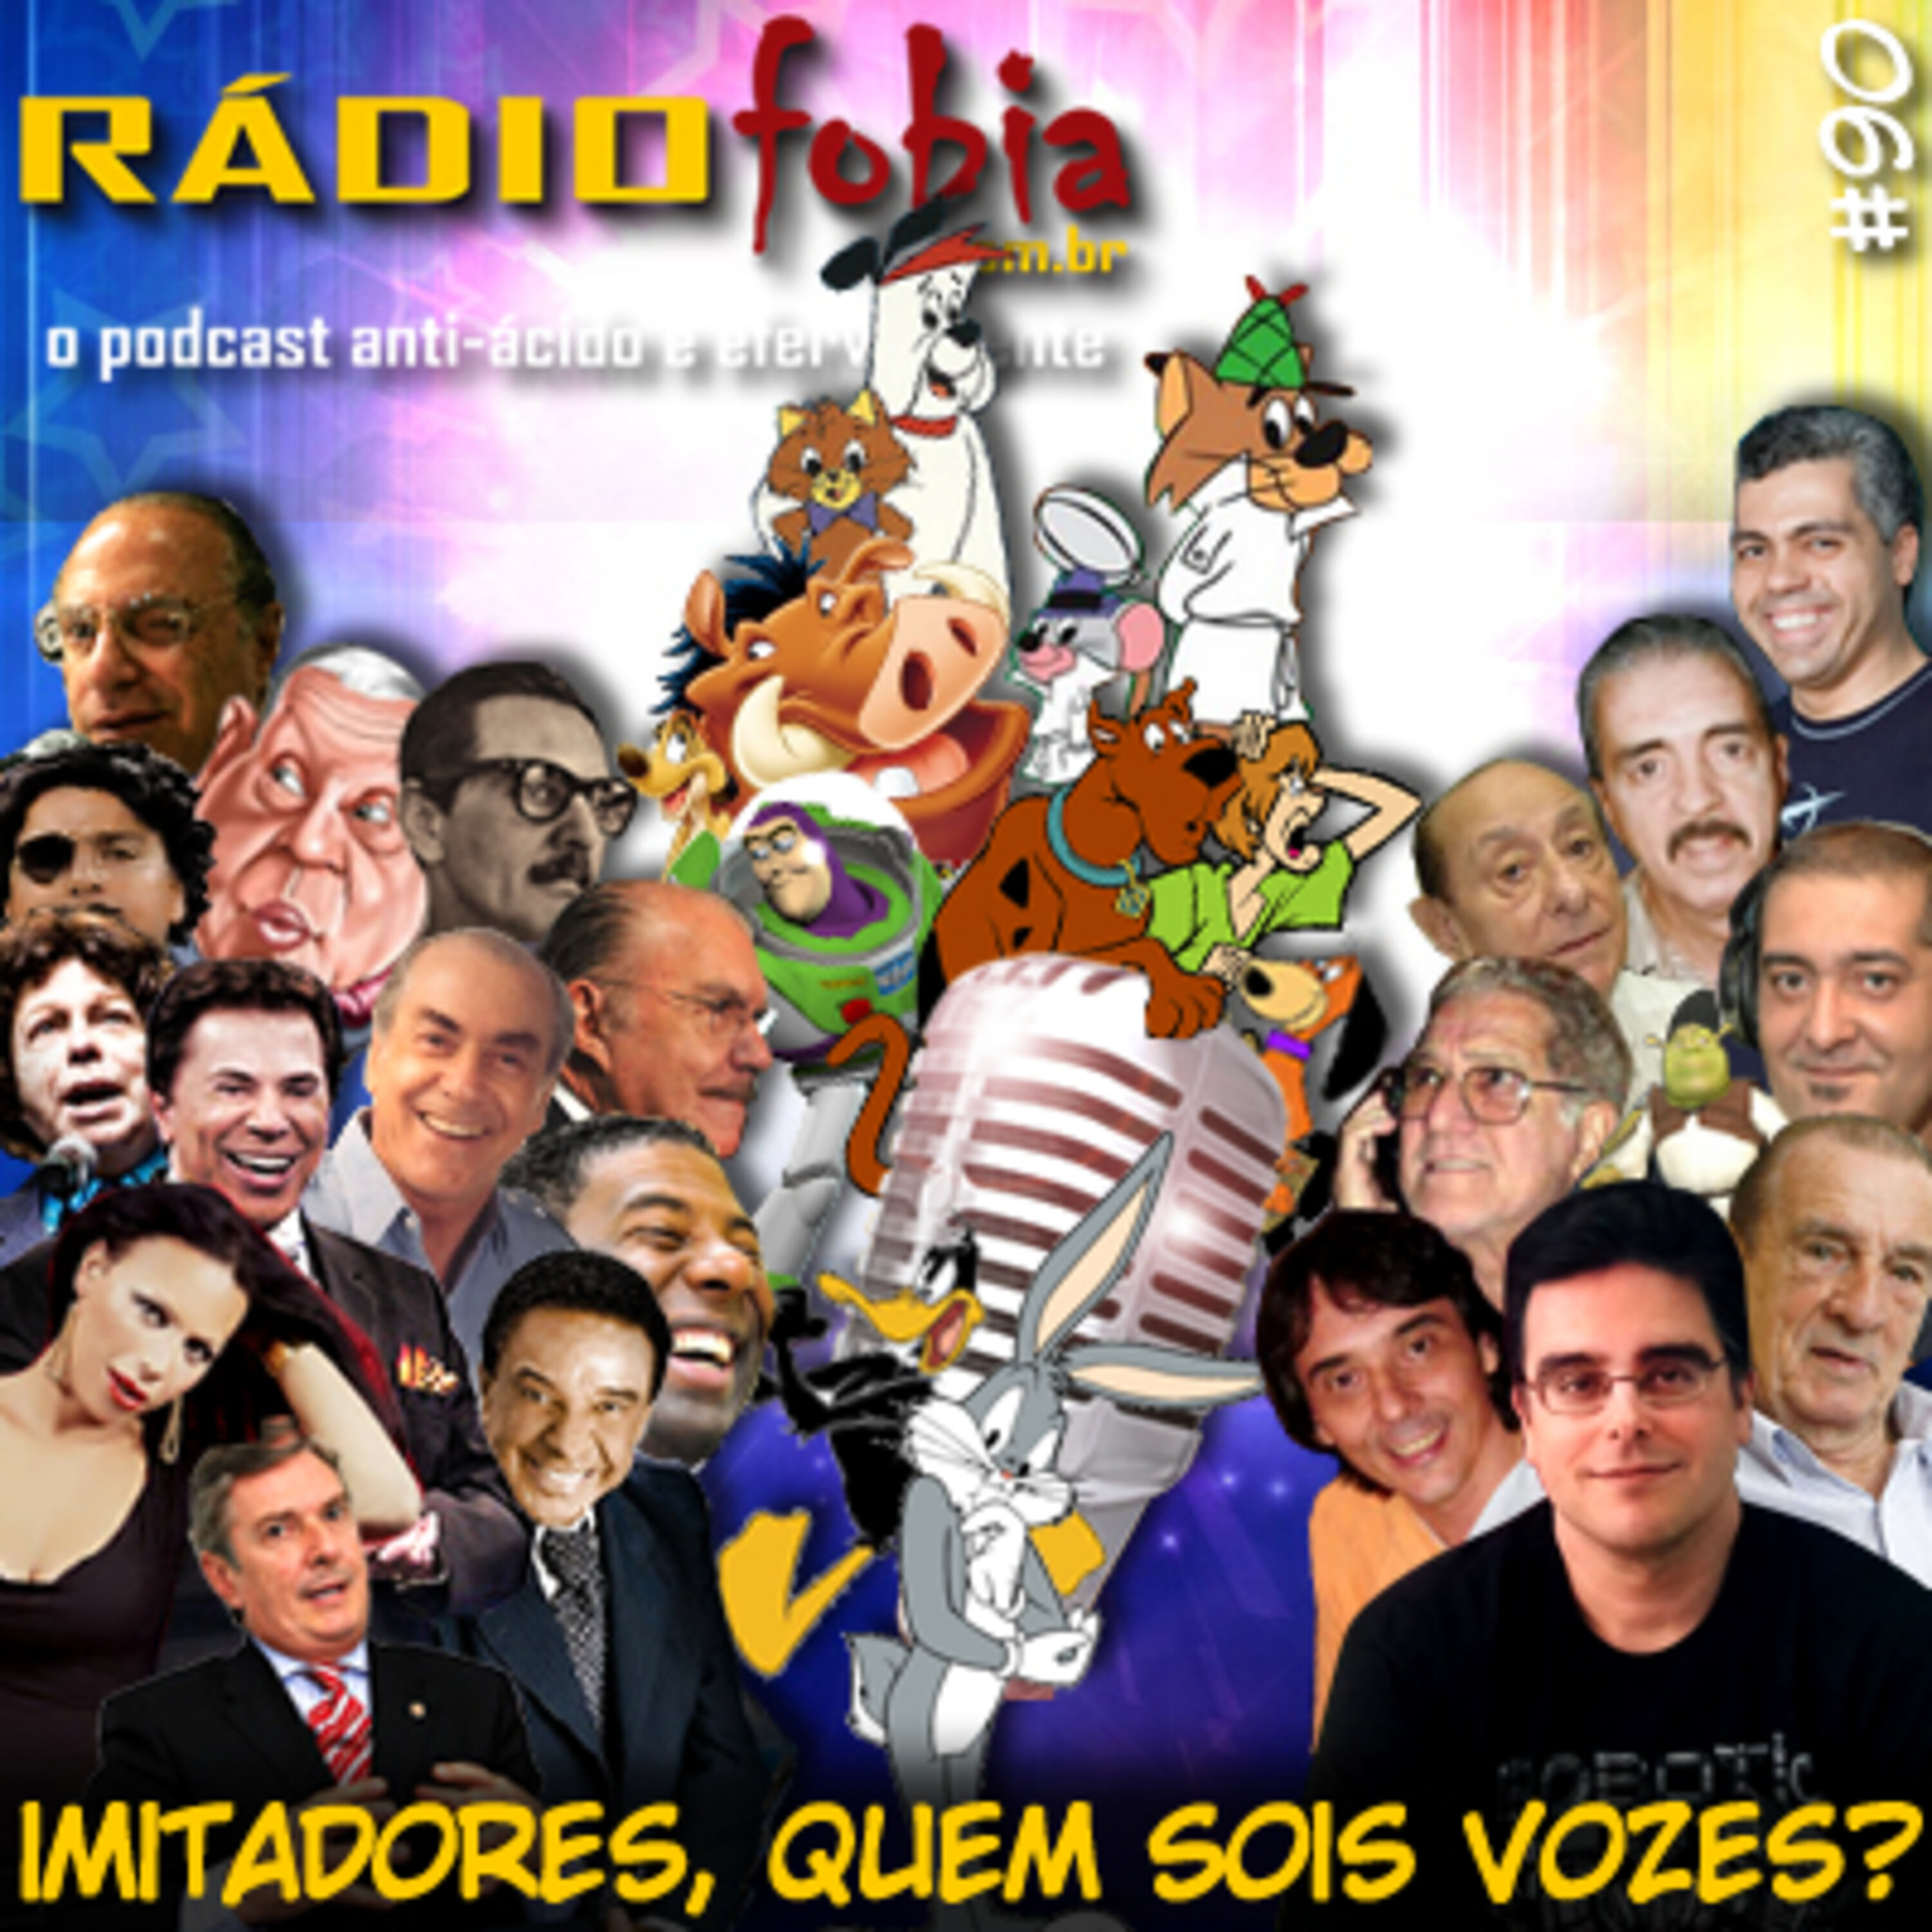 RADIOFOBIA 90 – Imitadores, quem sois vozes?